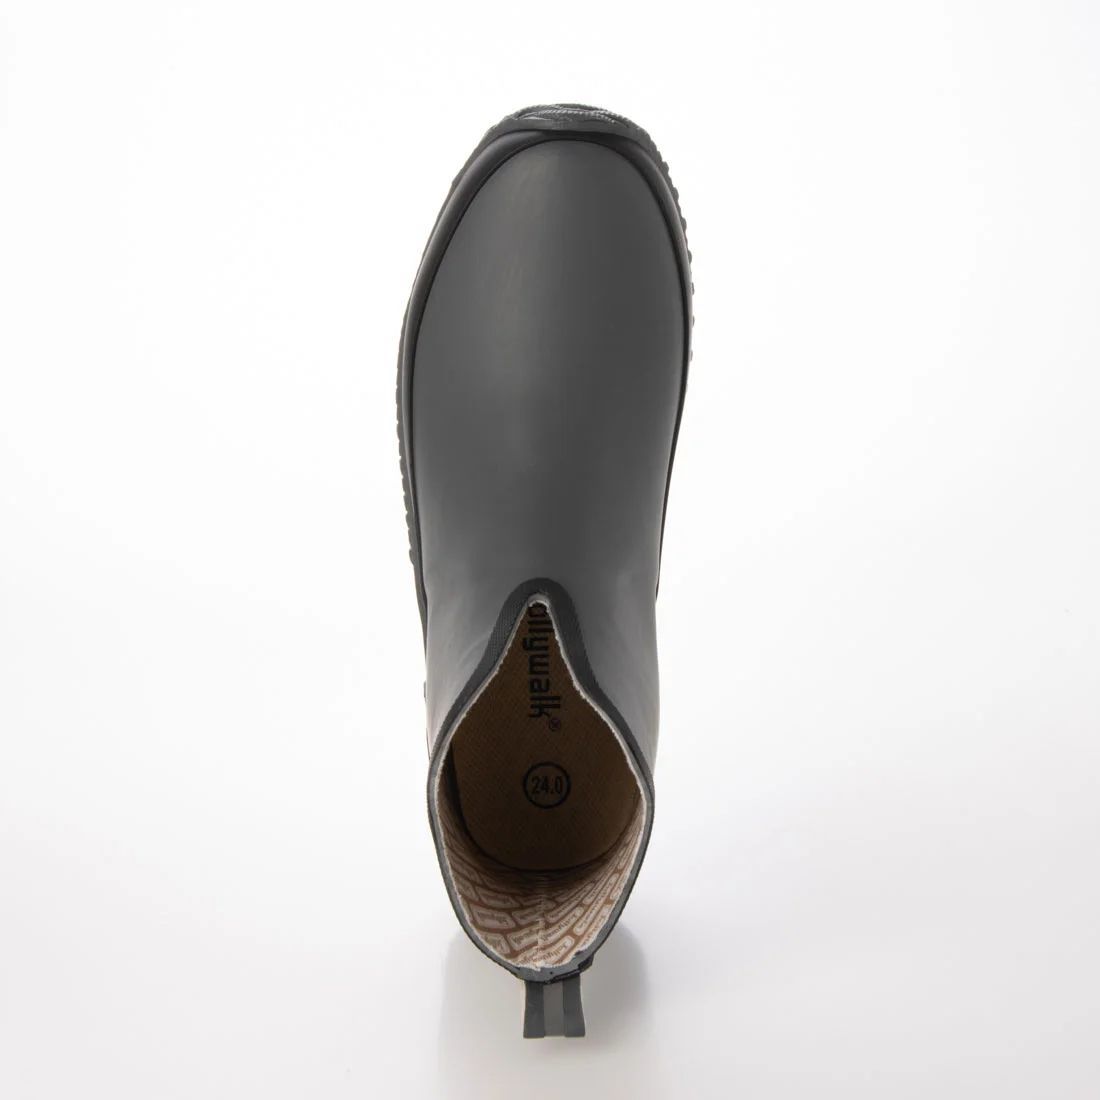 メンズレインブーツ　レインシューズ　長靴　雨靴　天然ゴム素材　新品『20089-gry-275』27.5cm　在庫一掃セール